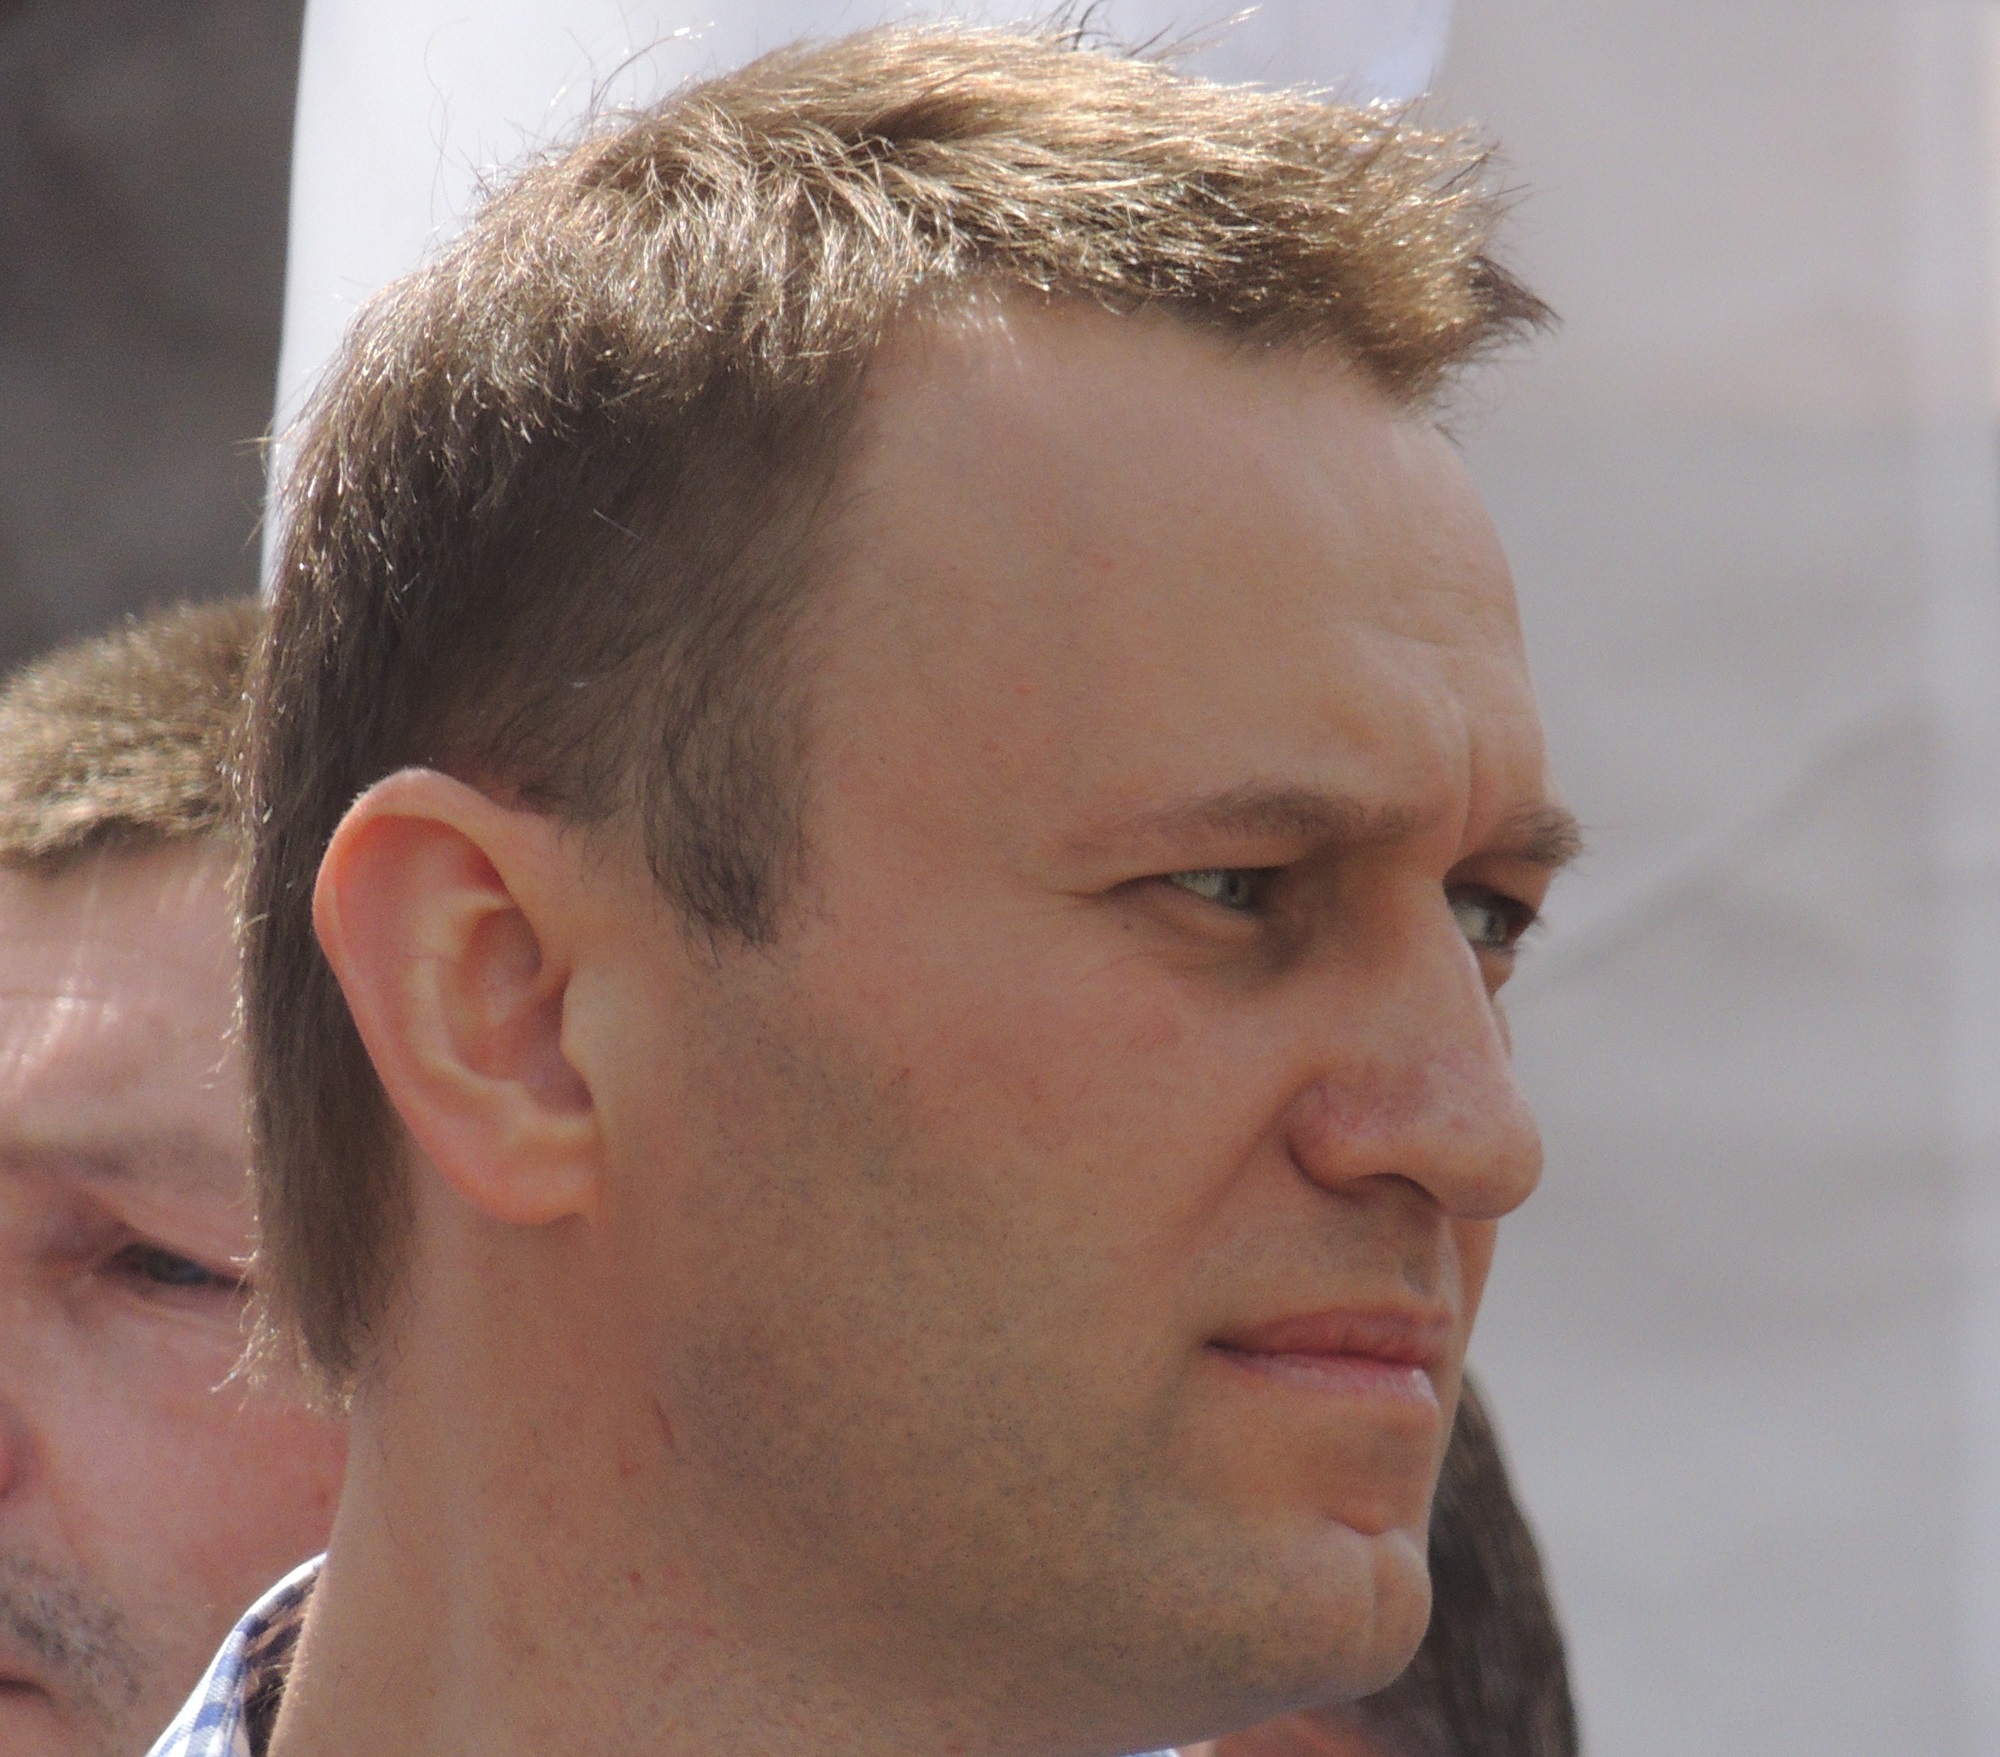 Navalnij est mortu